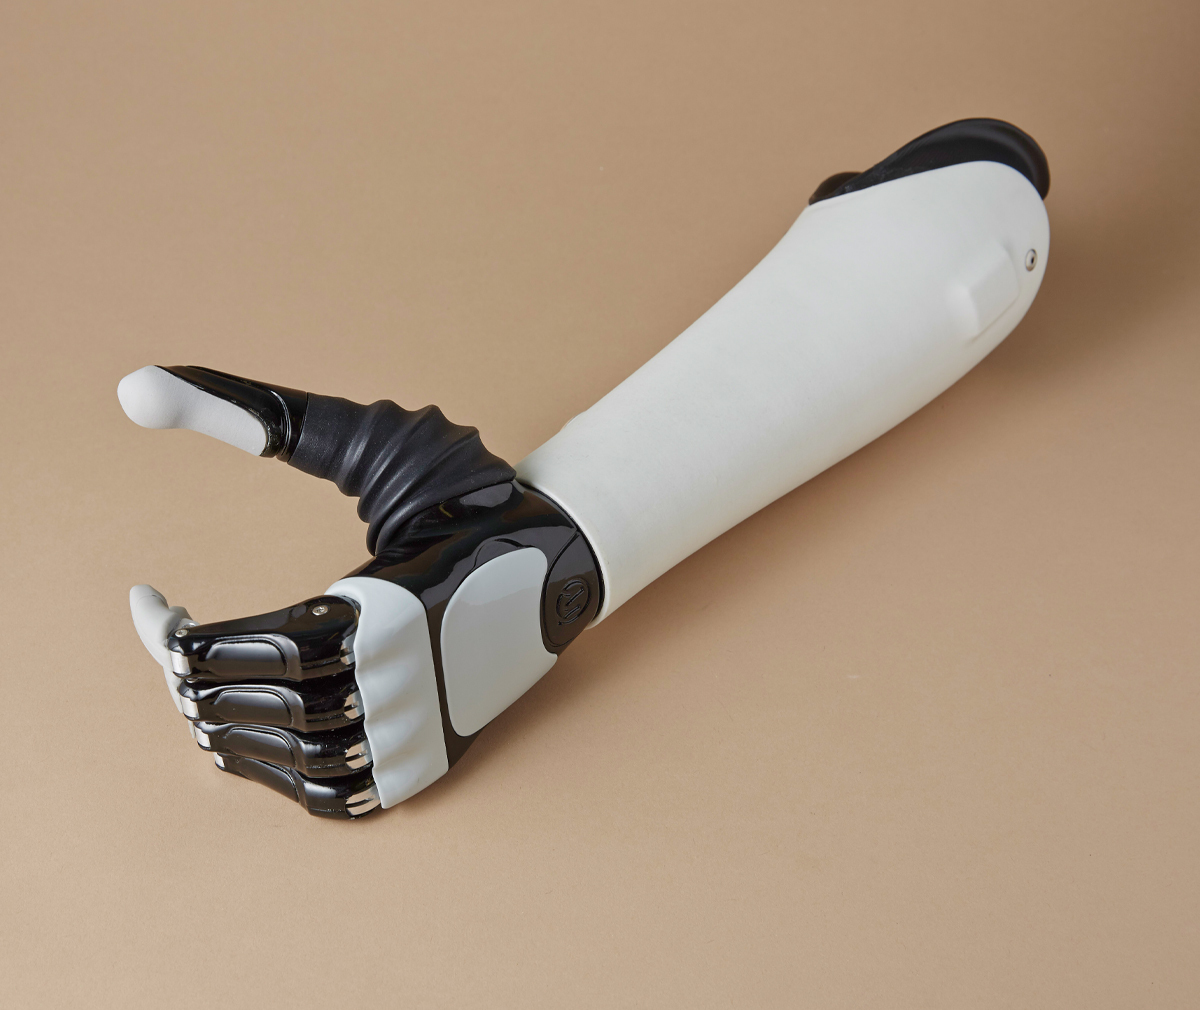 Моторика бионические протезы рук